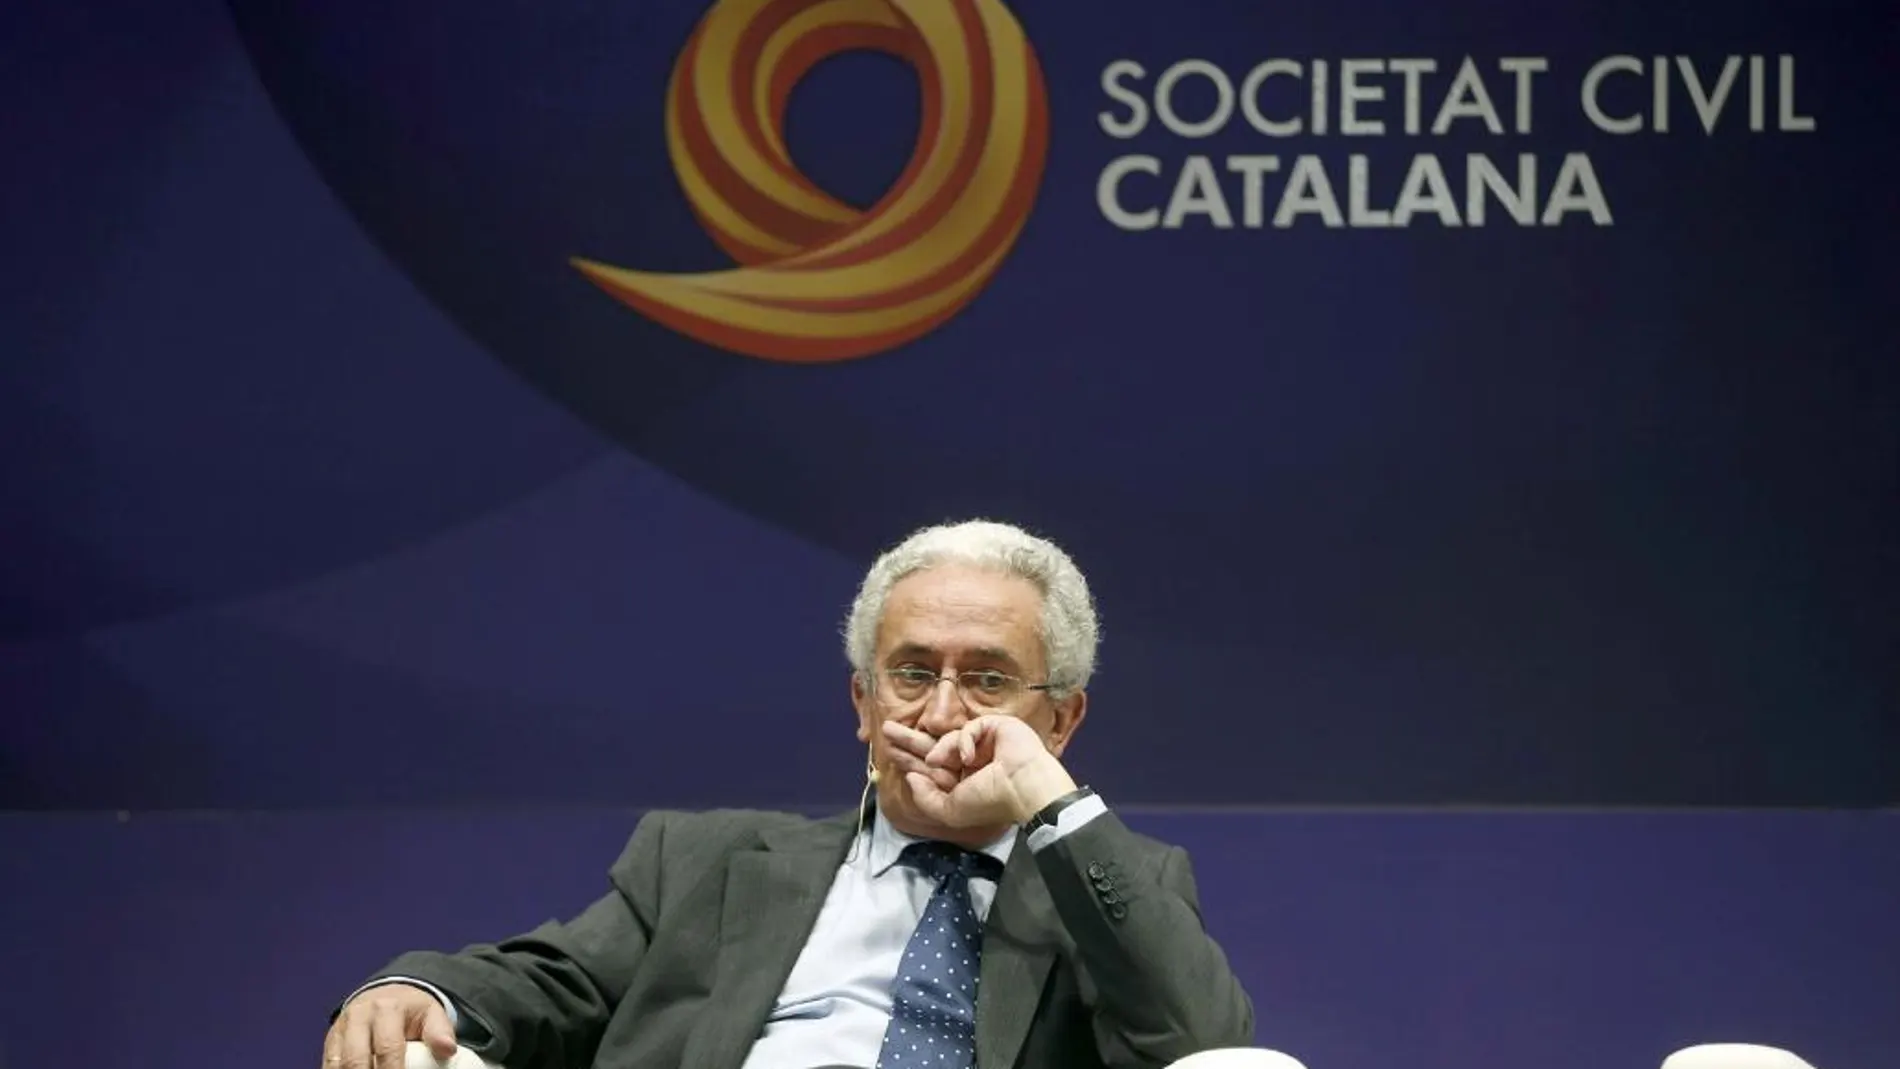 El exministro de trabajo del PP Juan Carlos Aparicio, ha participado en Barcelona, en la mesa redonda sobre las pensiones, organizada por Societat Civil Catalana.